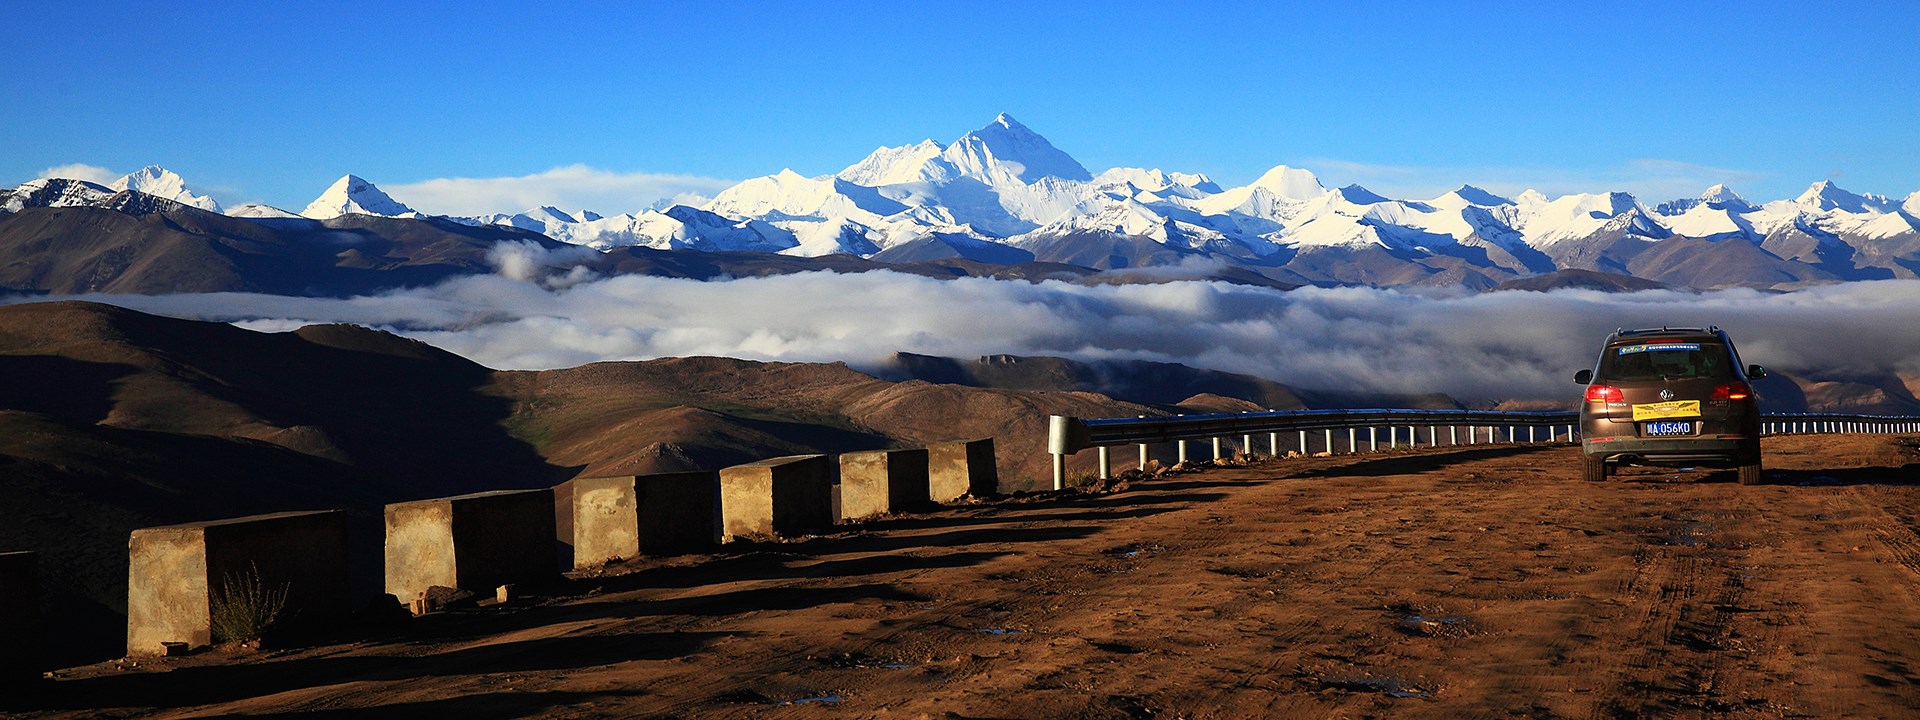 Voyage en Voiture de Lhassa à Katmandou via Everest